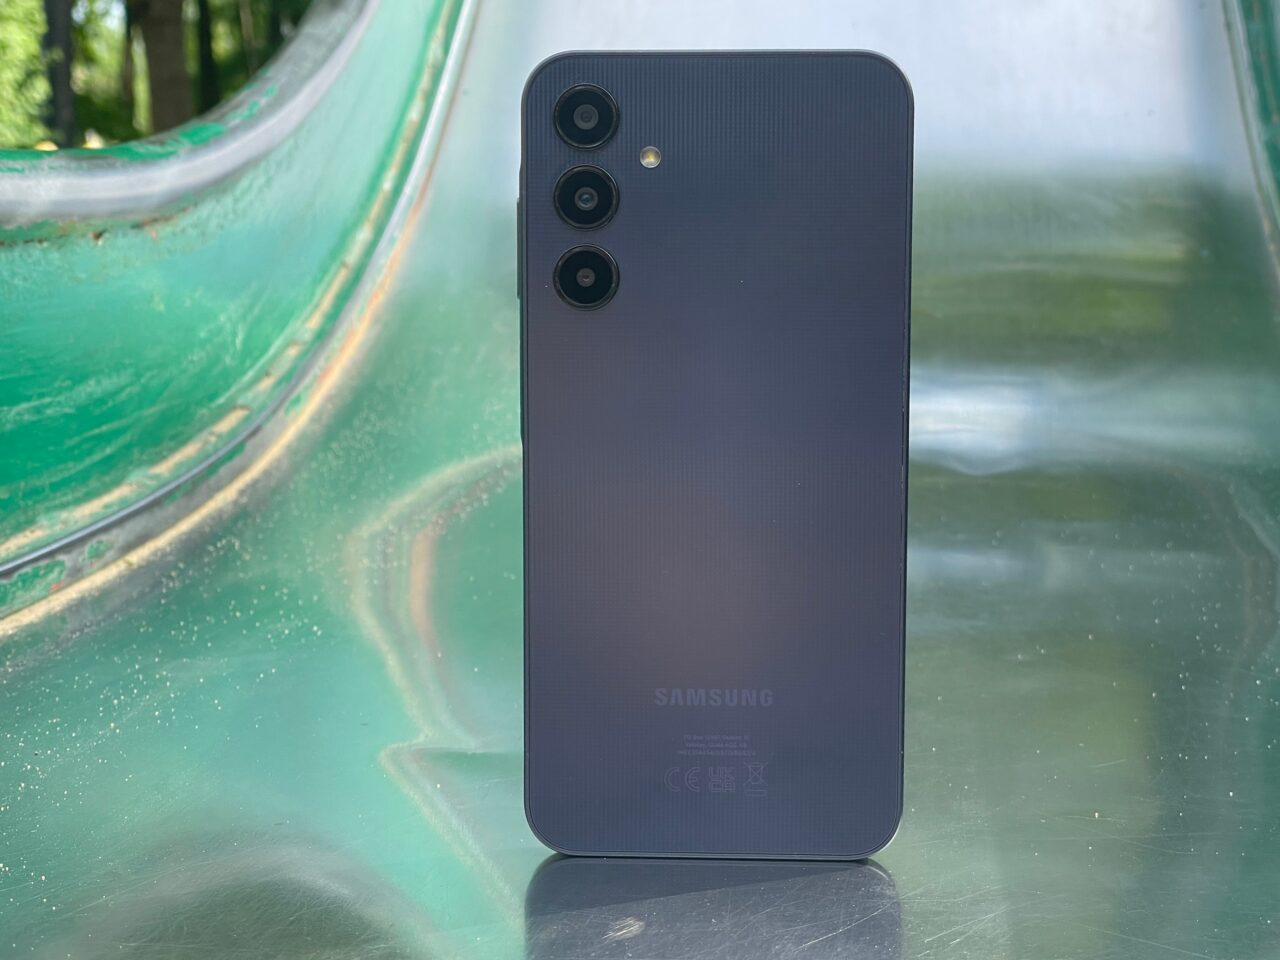 Szary smartfon Samsung stoi na szklanej powierzchni z zielonym tłem.